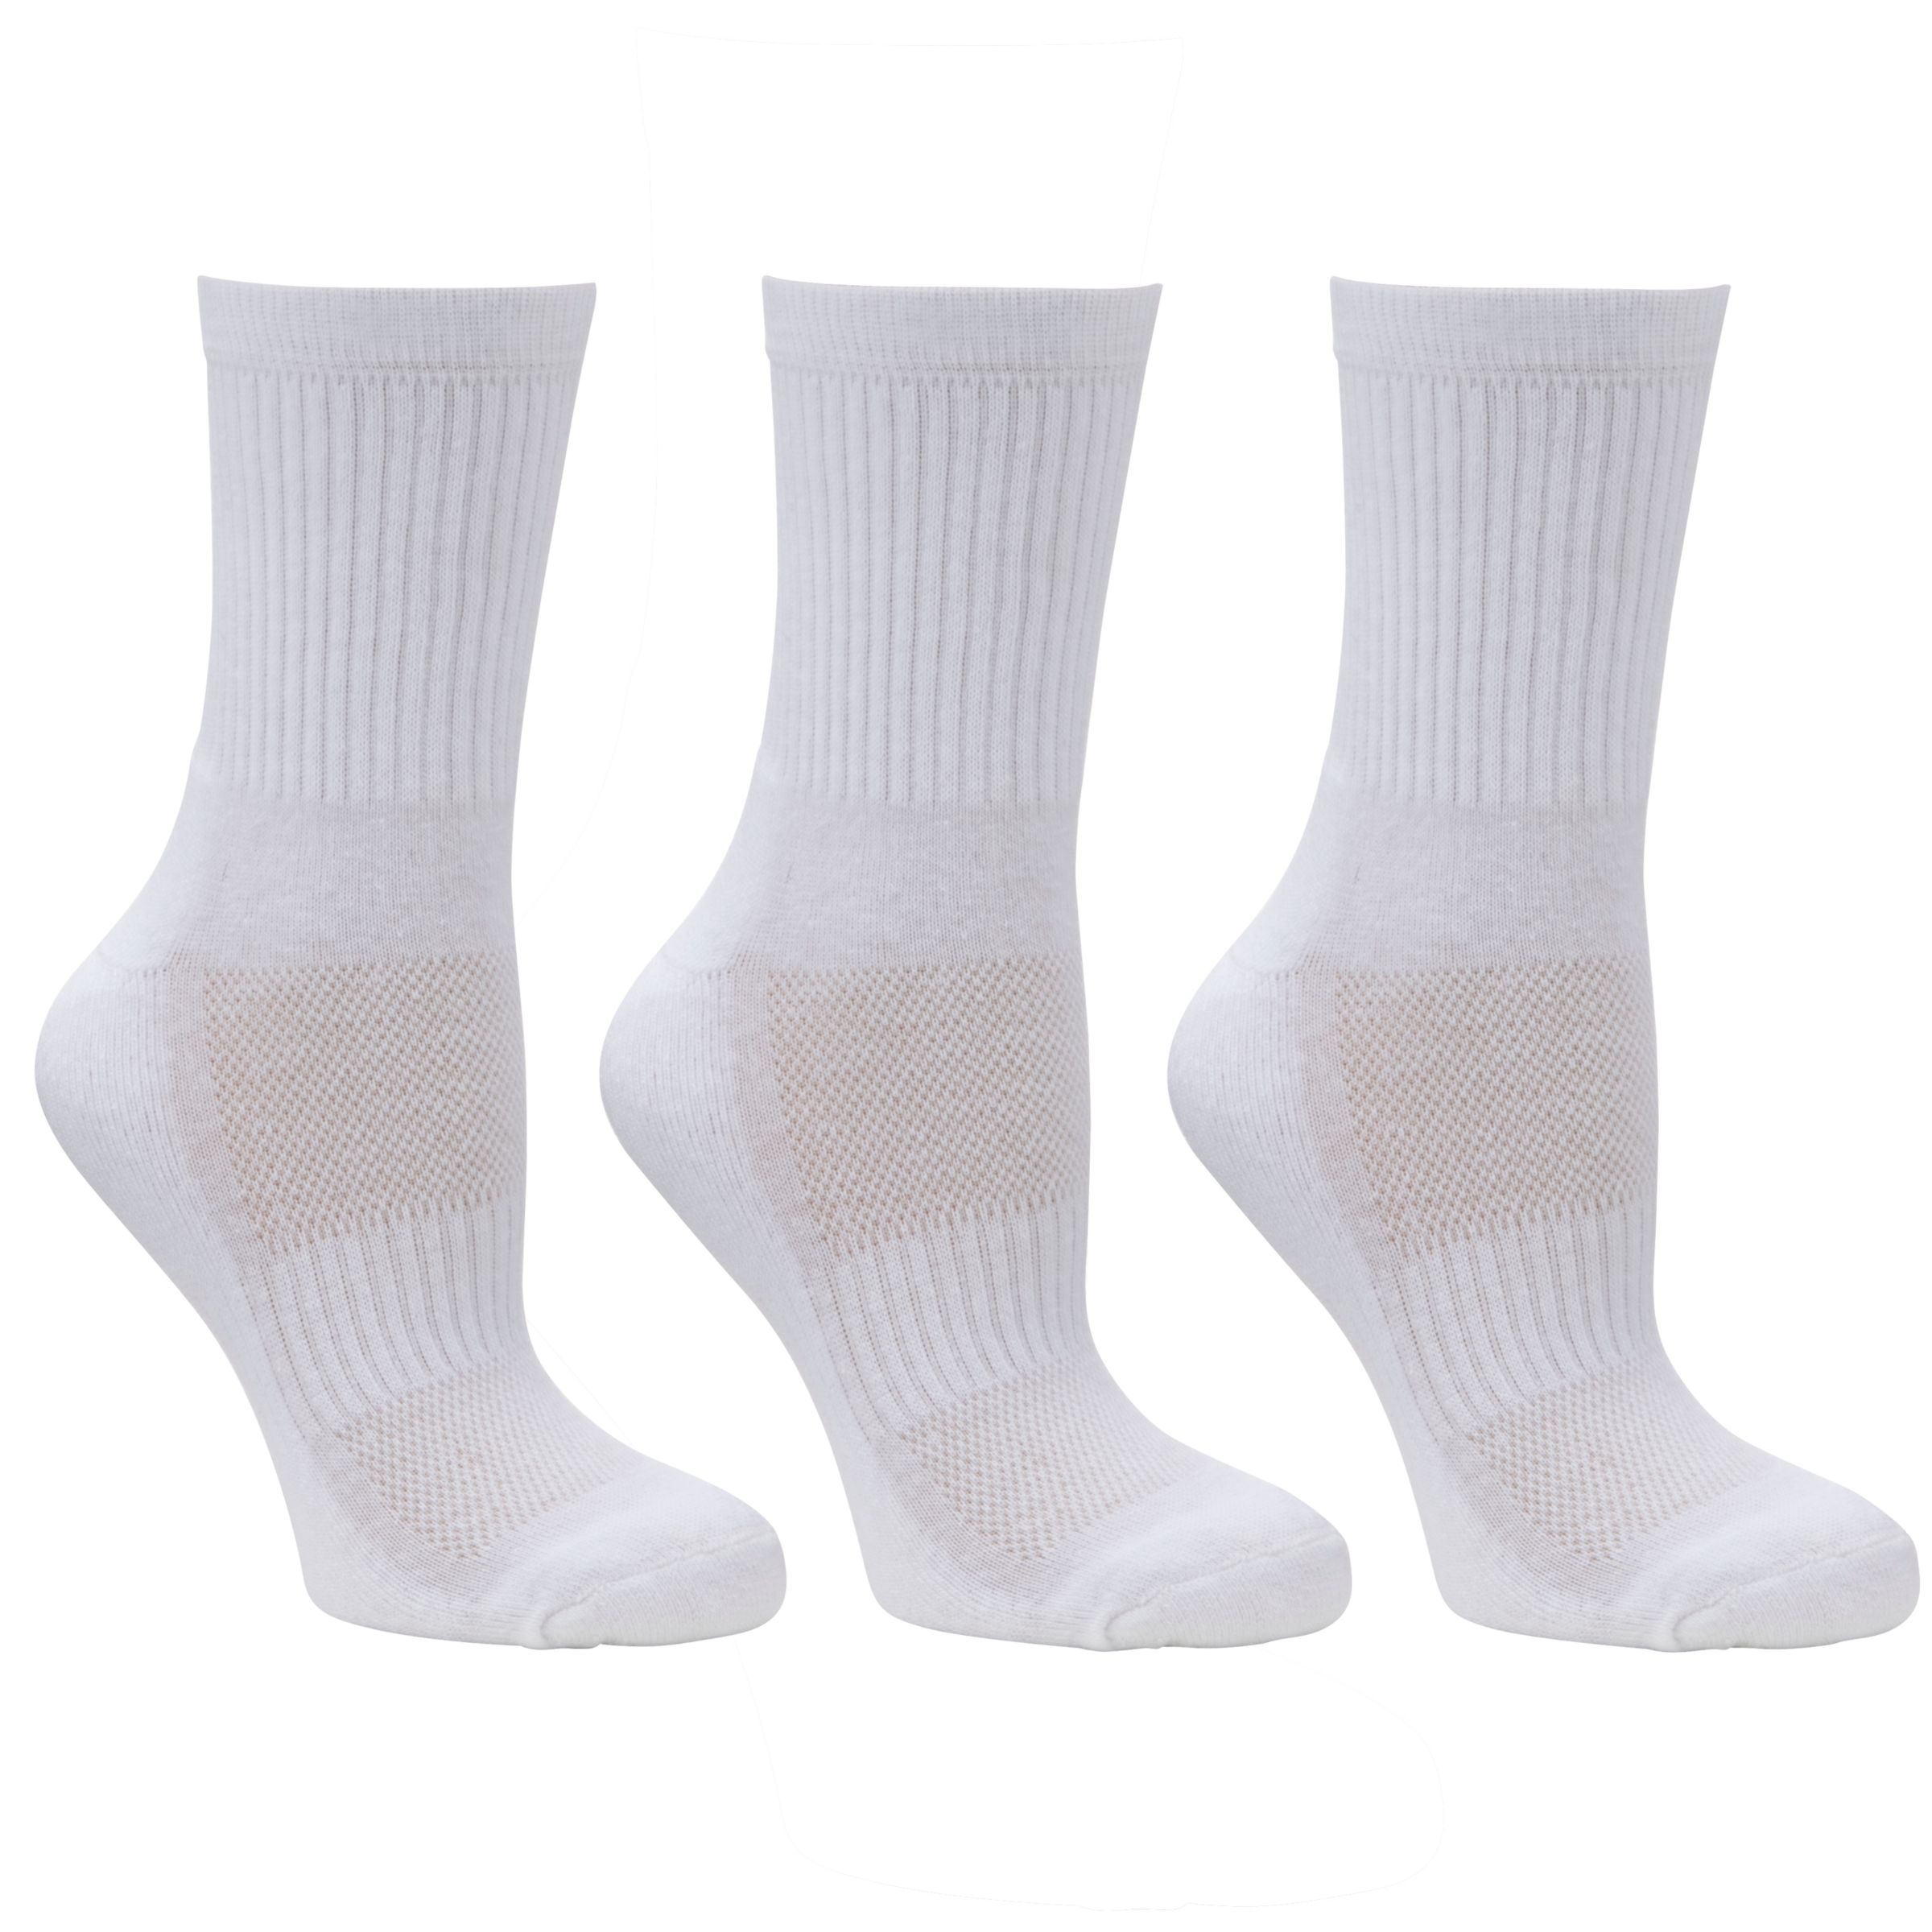 John Lewis & Partners Plain Crew Socks, Pack Of 3, White, M